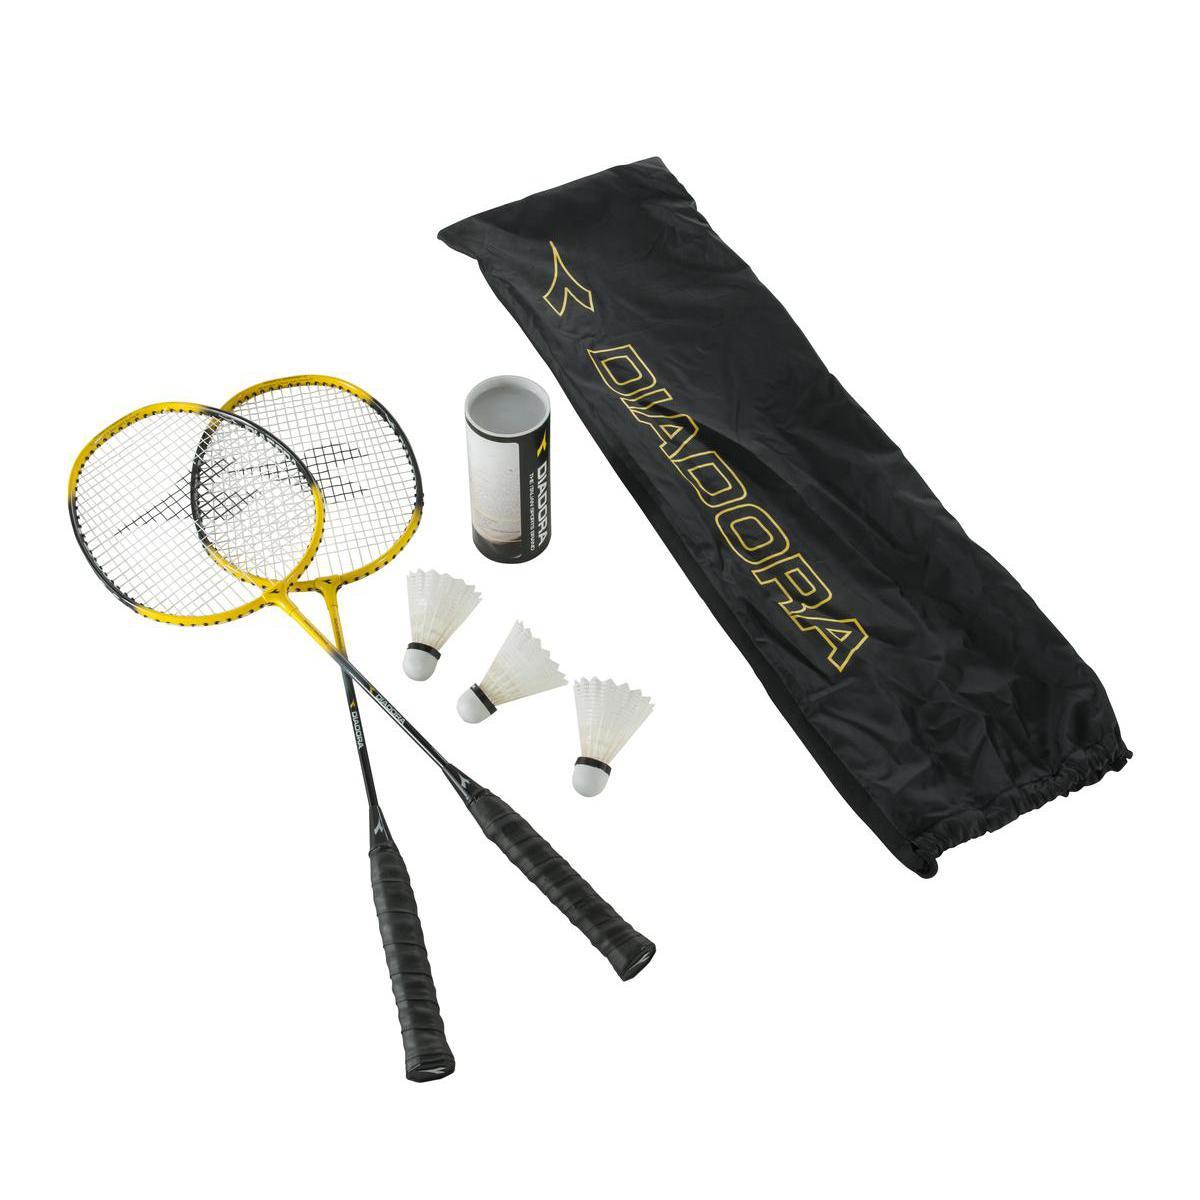 Lot de 2 raquettes de badminton et volants Diadora - Graphite - Longeur 65 cm environ x largeur 25 cm - Noir et jaune